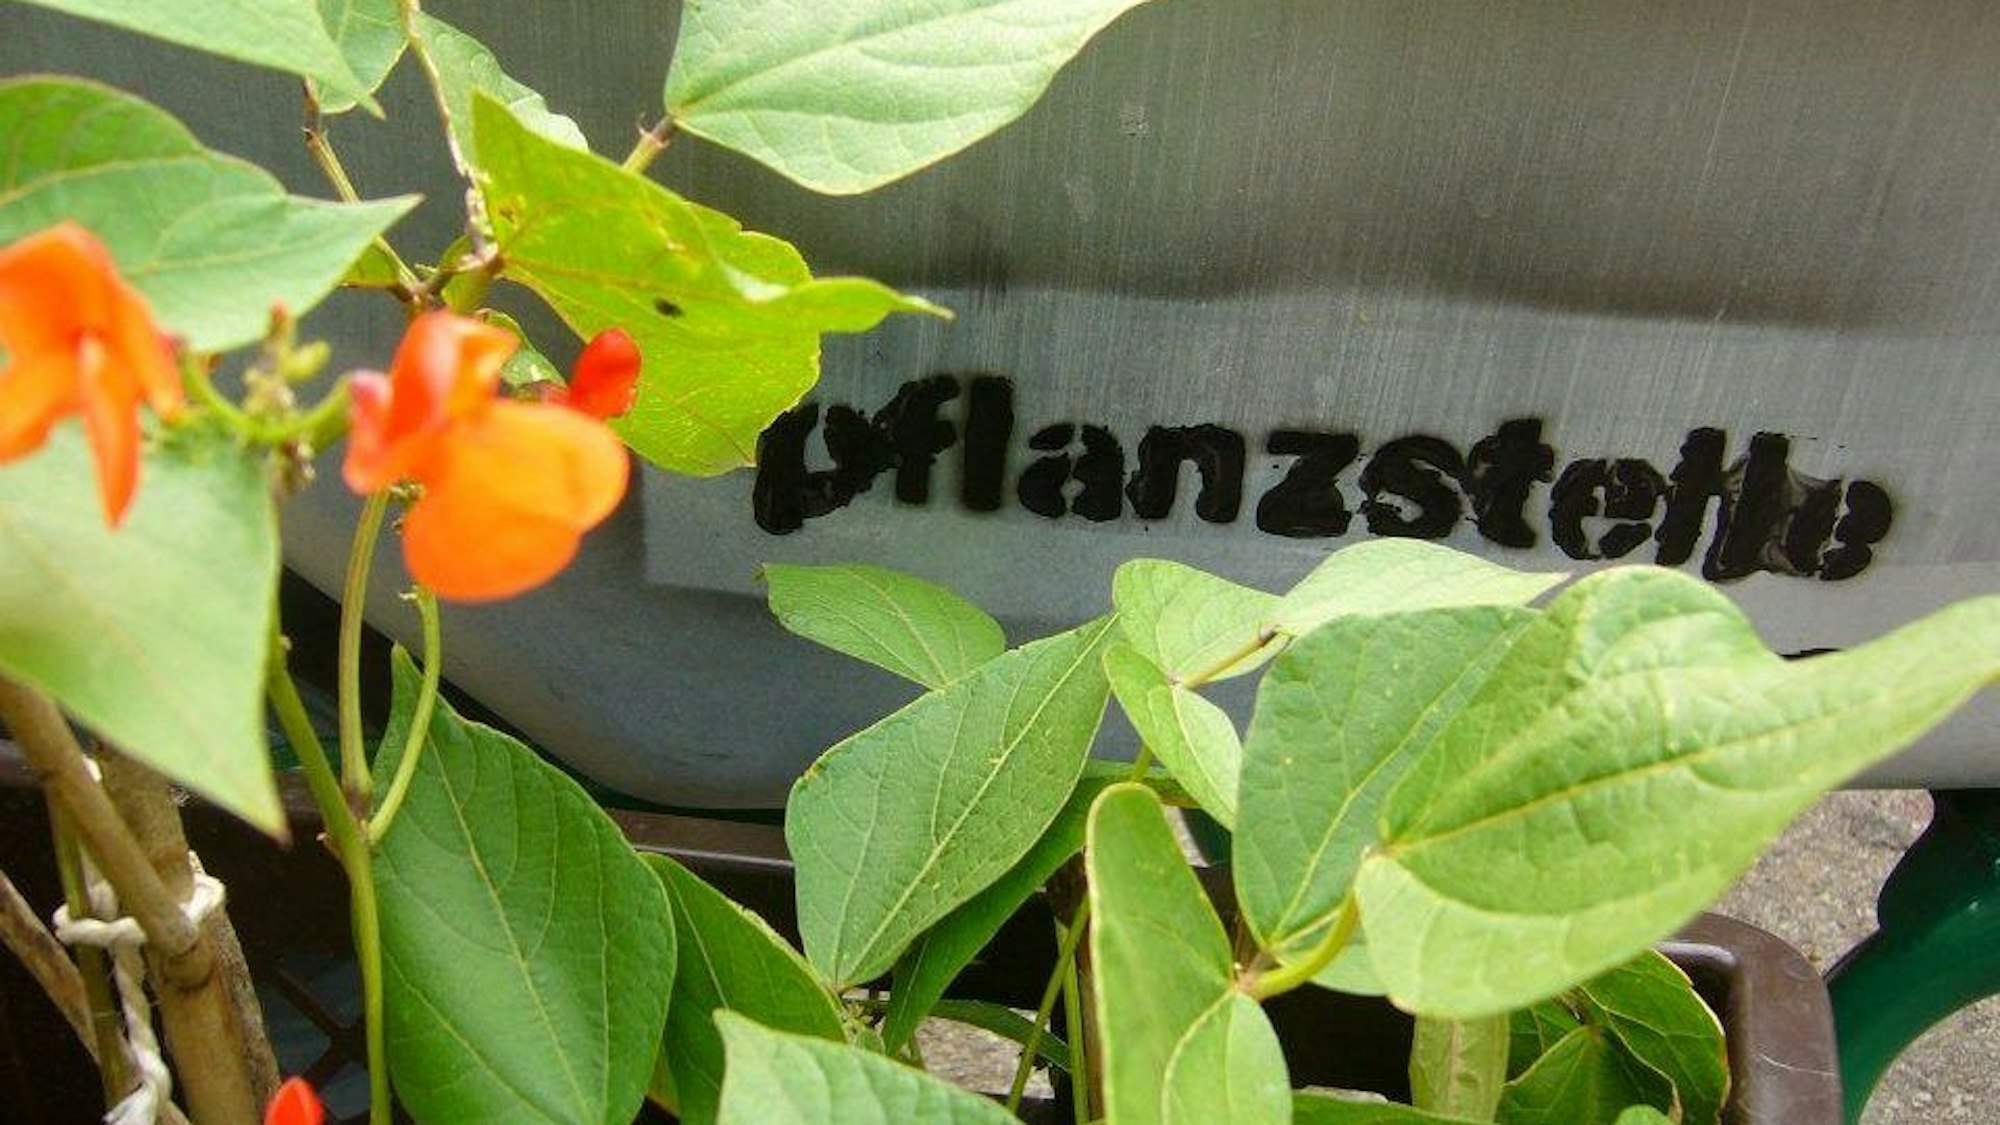 Urban Gardening Projekt Pflanzstelle Kalk: Eine blühende Pflanze vor dem Schild der Pflanzstelle